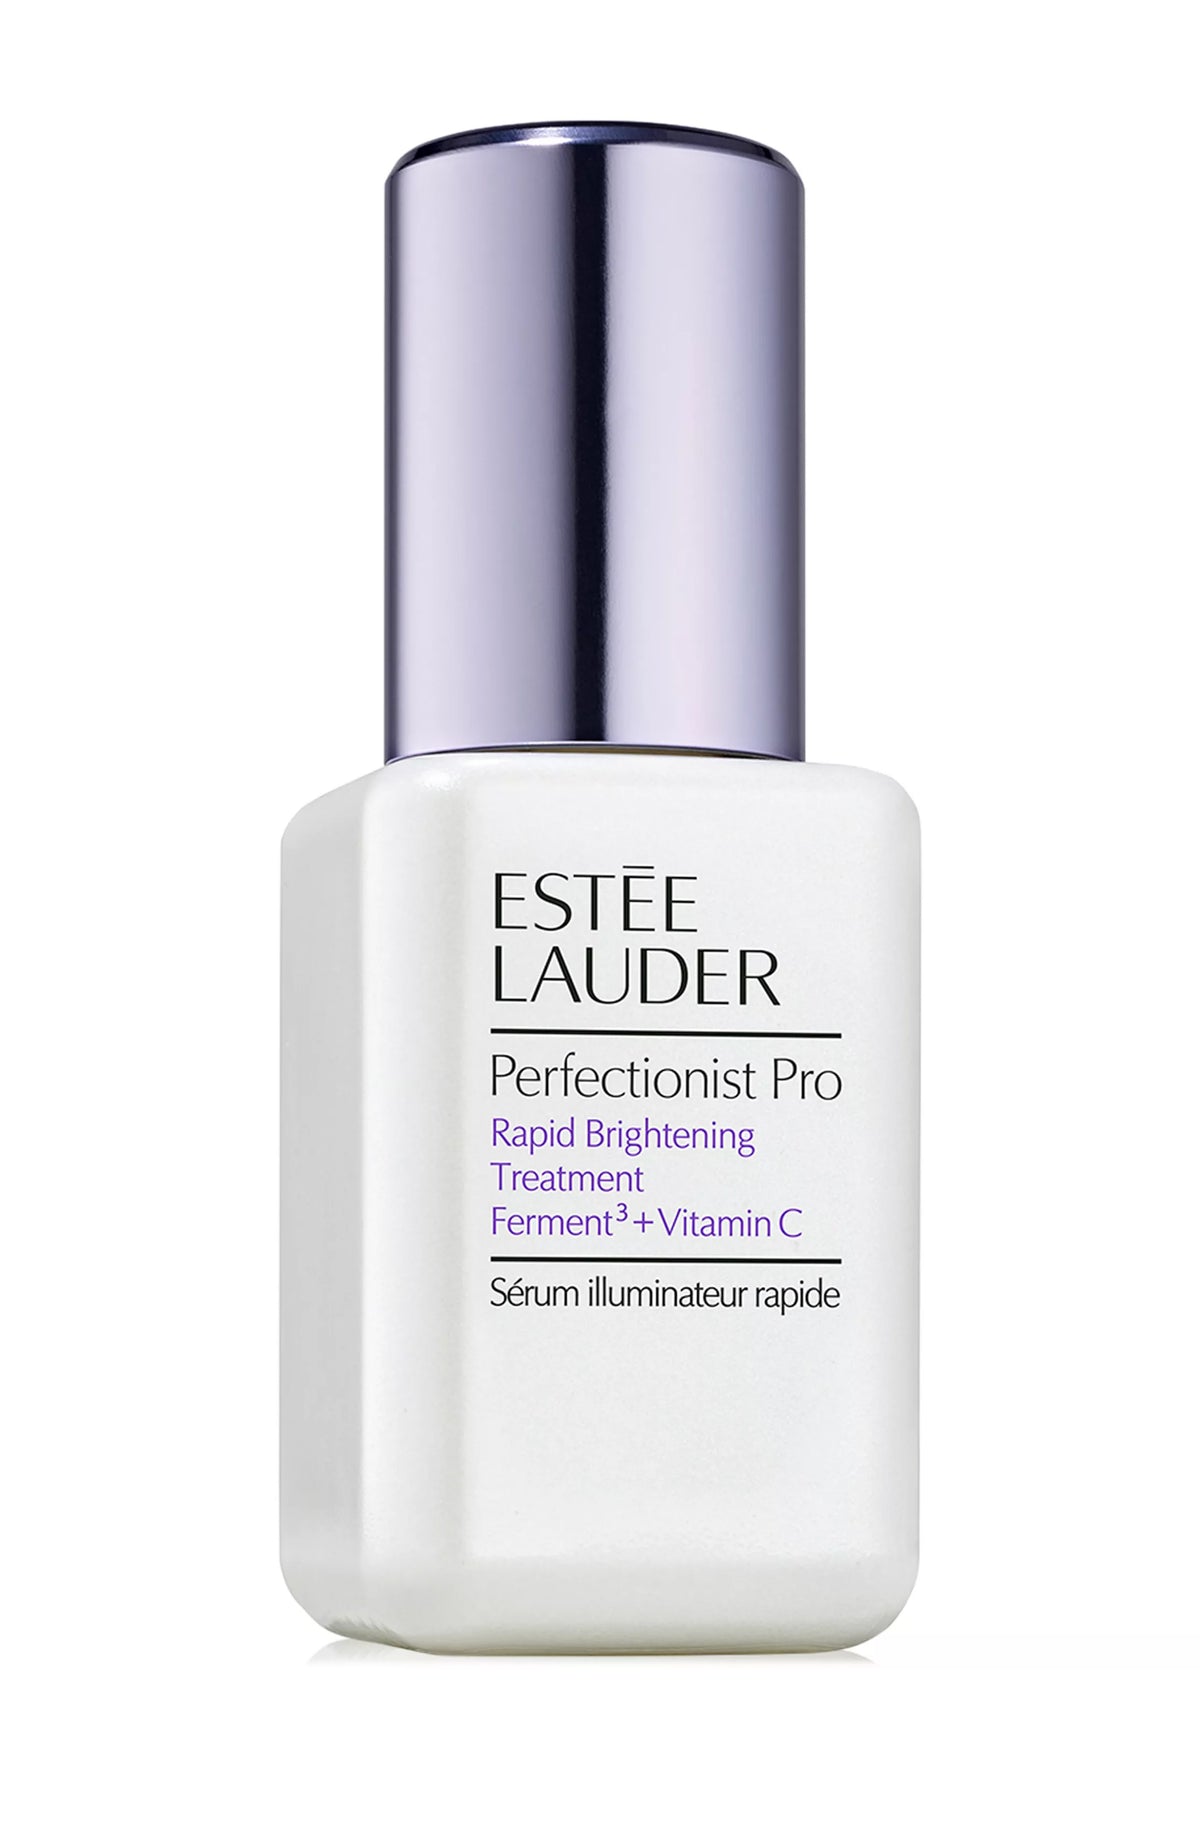 Estee Lauder Perfectionist Pro Rapid Brightening Treatment Serum with Ferment³ + Vitamin C